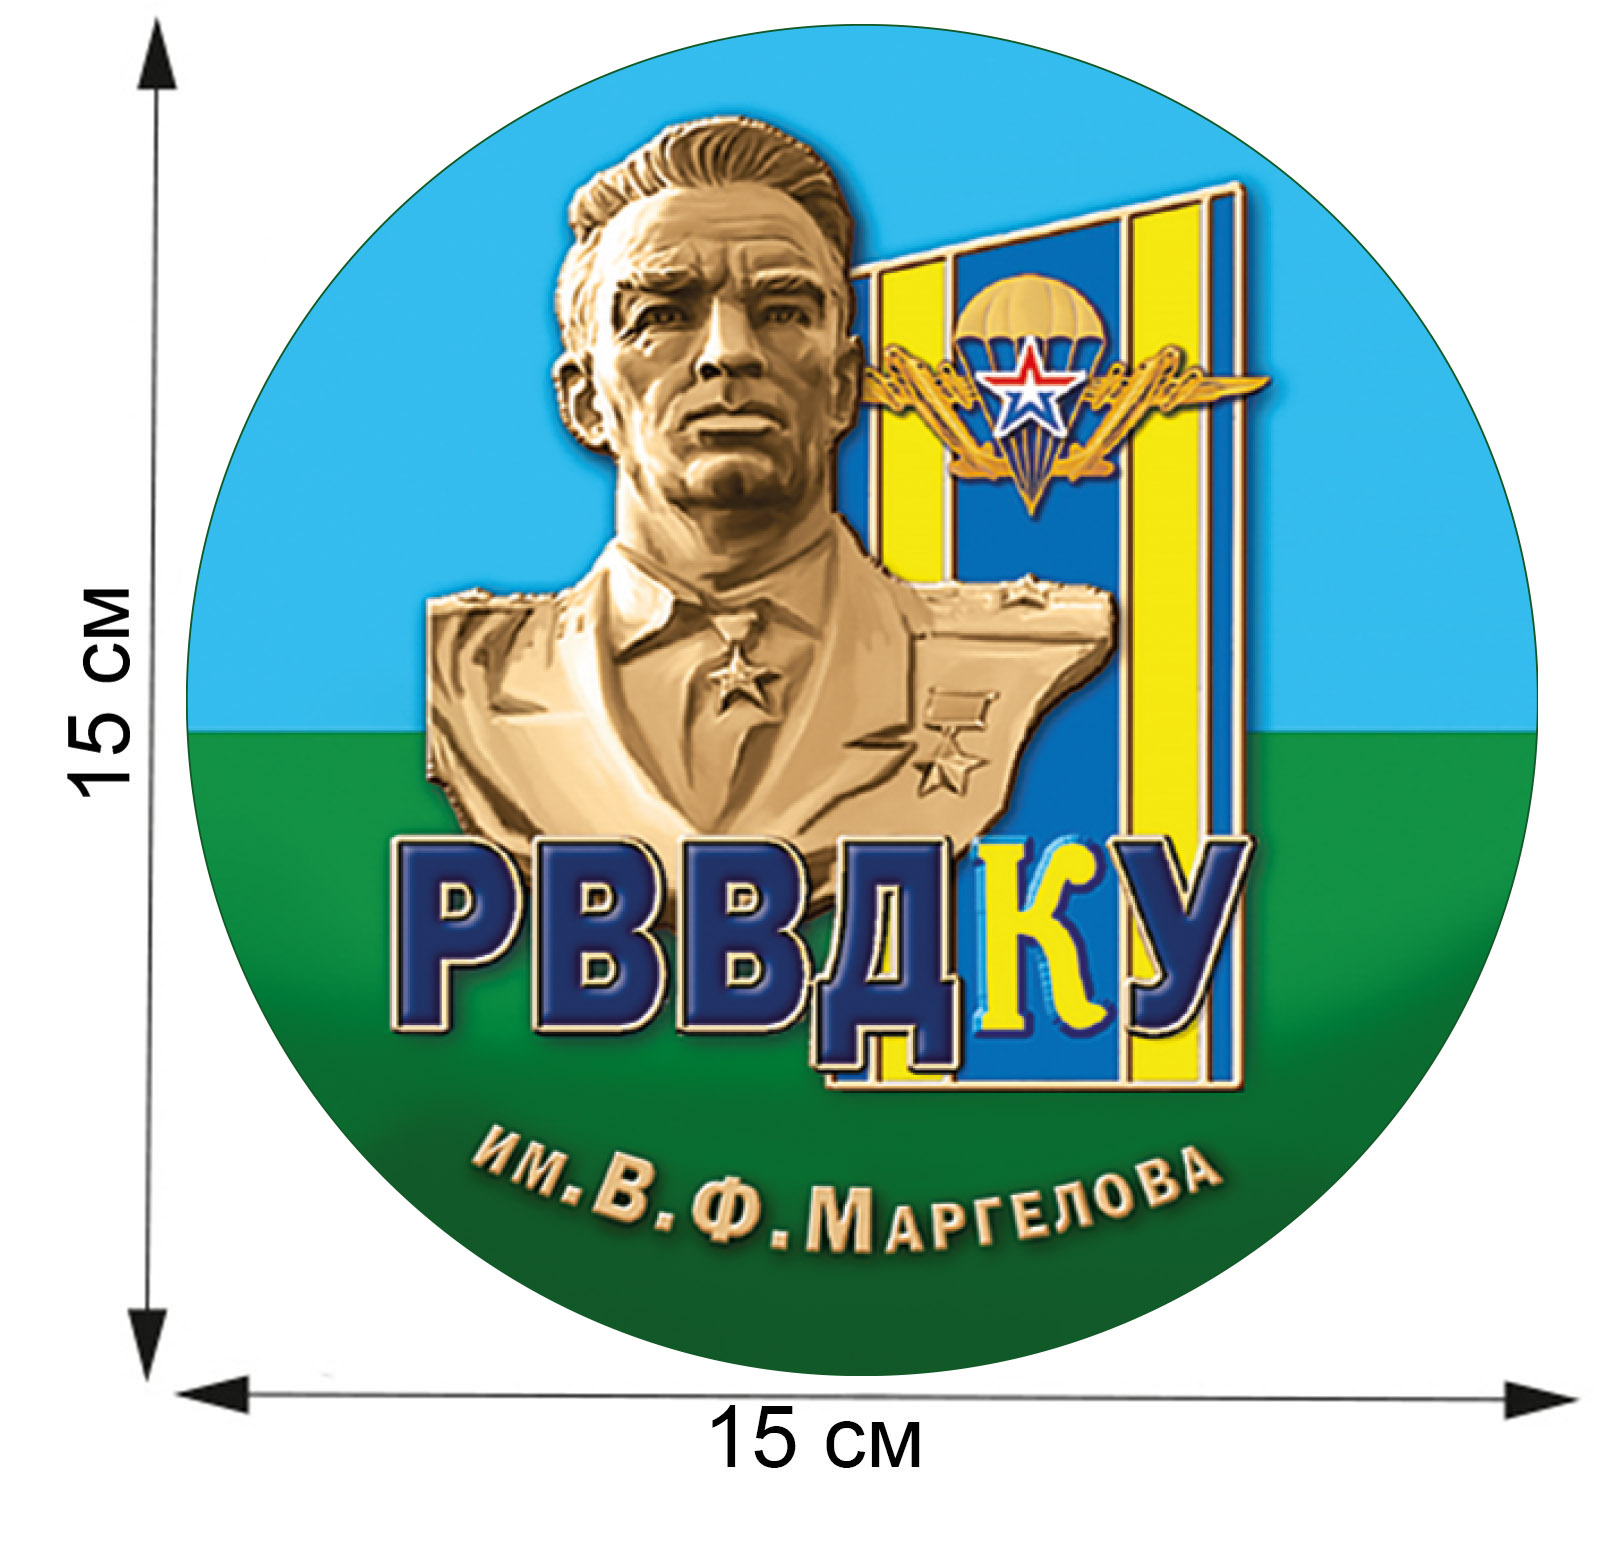 Статусная наклейка для десантников РВВДКУ по символической цене